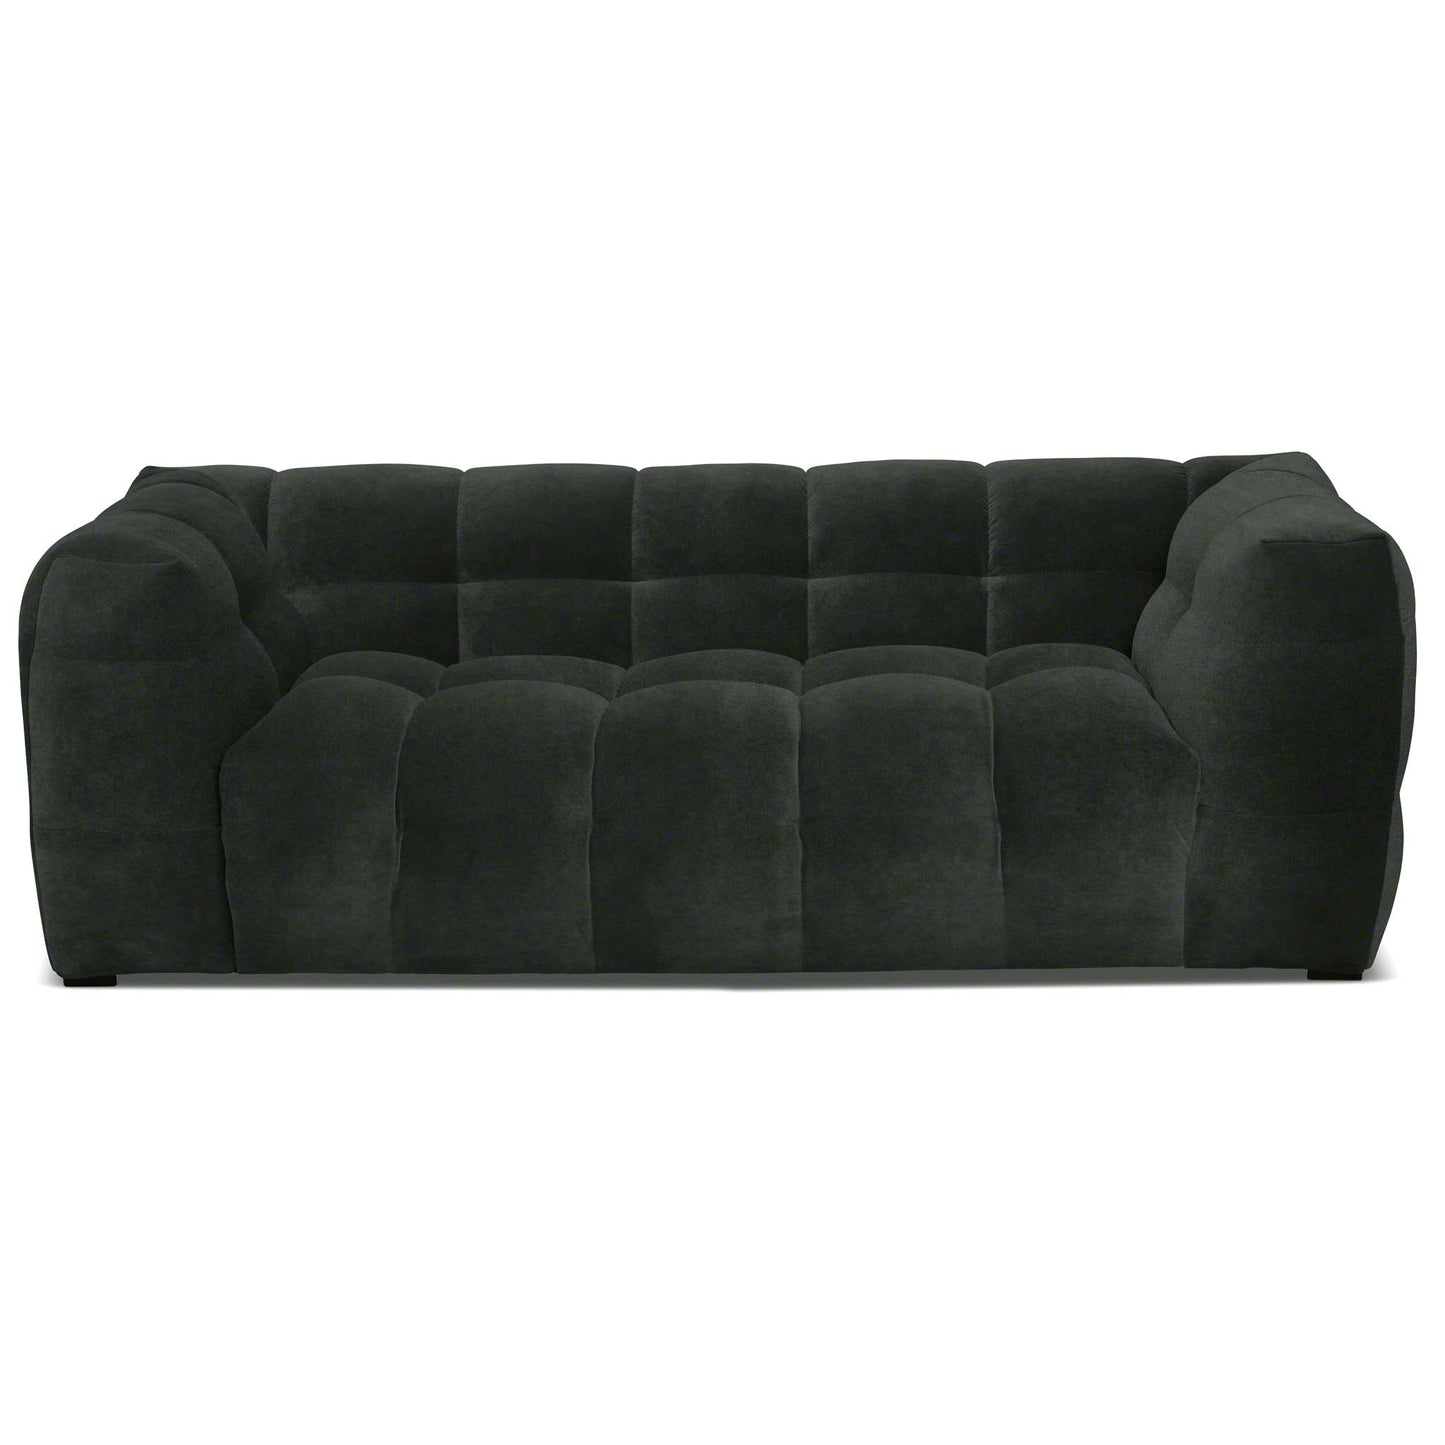 Läcker liten 2-sits soffa i mörkgrön sammet av hög kvalitet. Bubbligt designspråk.